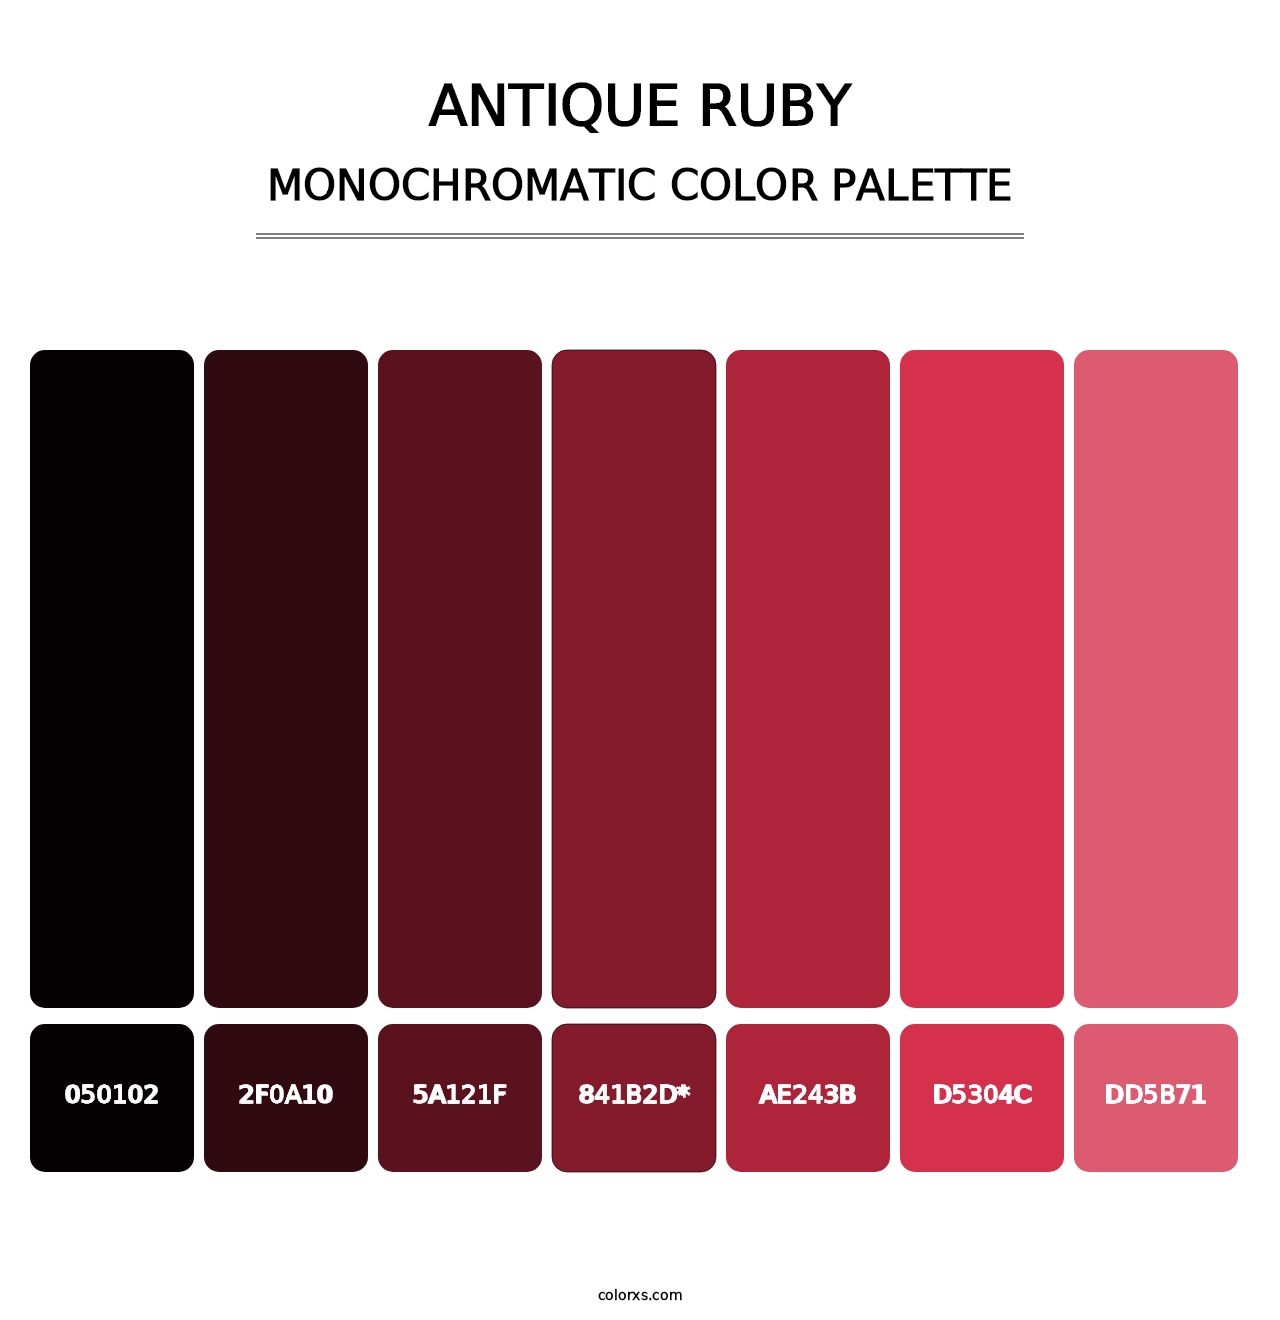 Antique Ruby - Monochromatic Color Palette